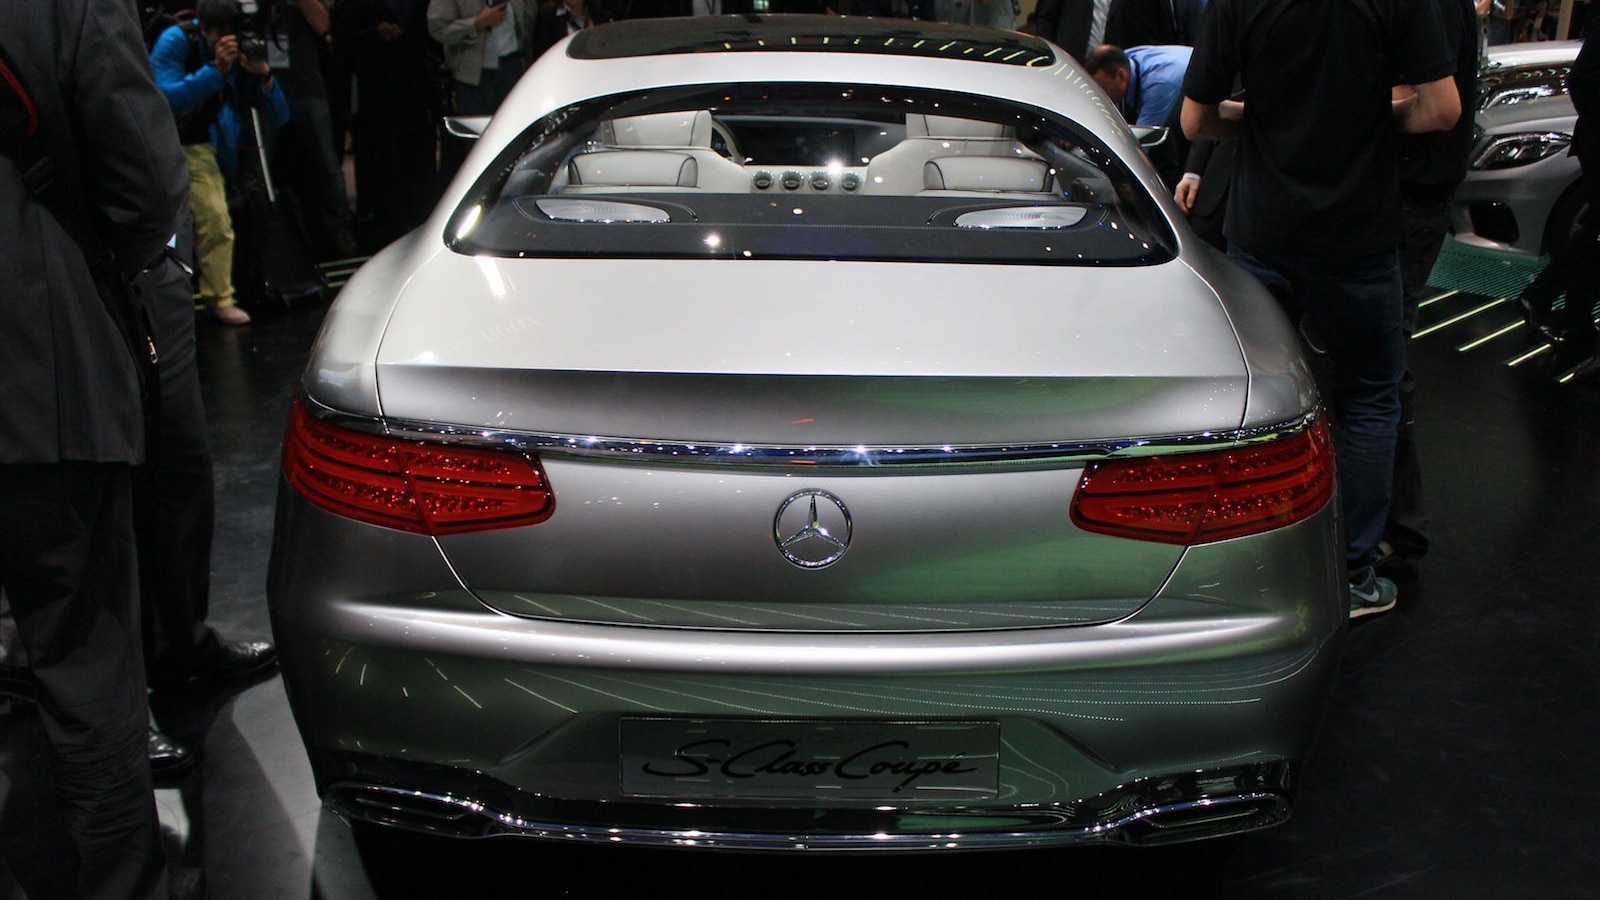 Mercedes-Benz Concept S Class Coupe, 2013 Frankfurt Auto Show